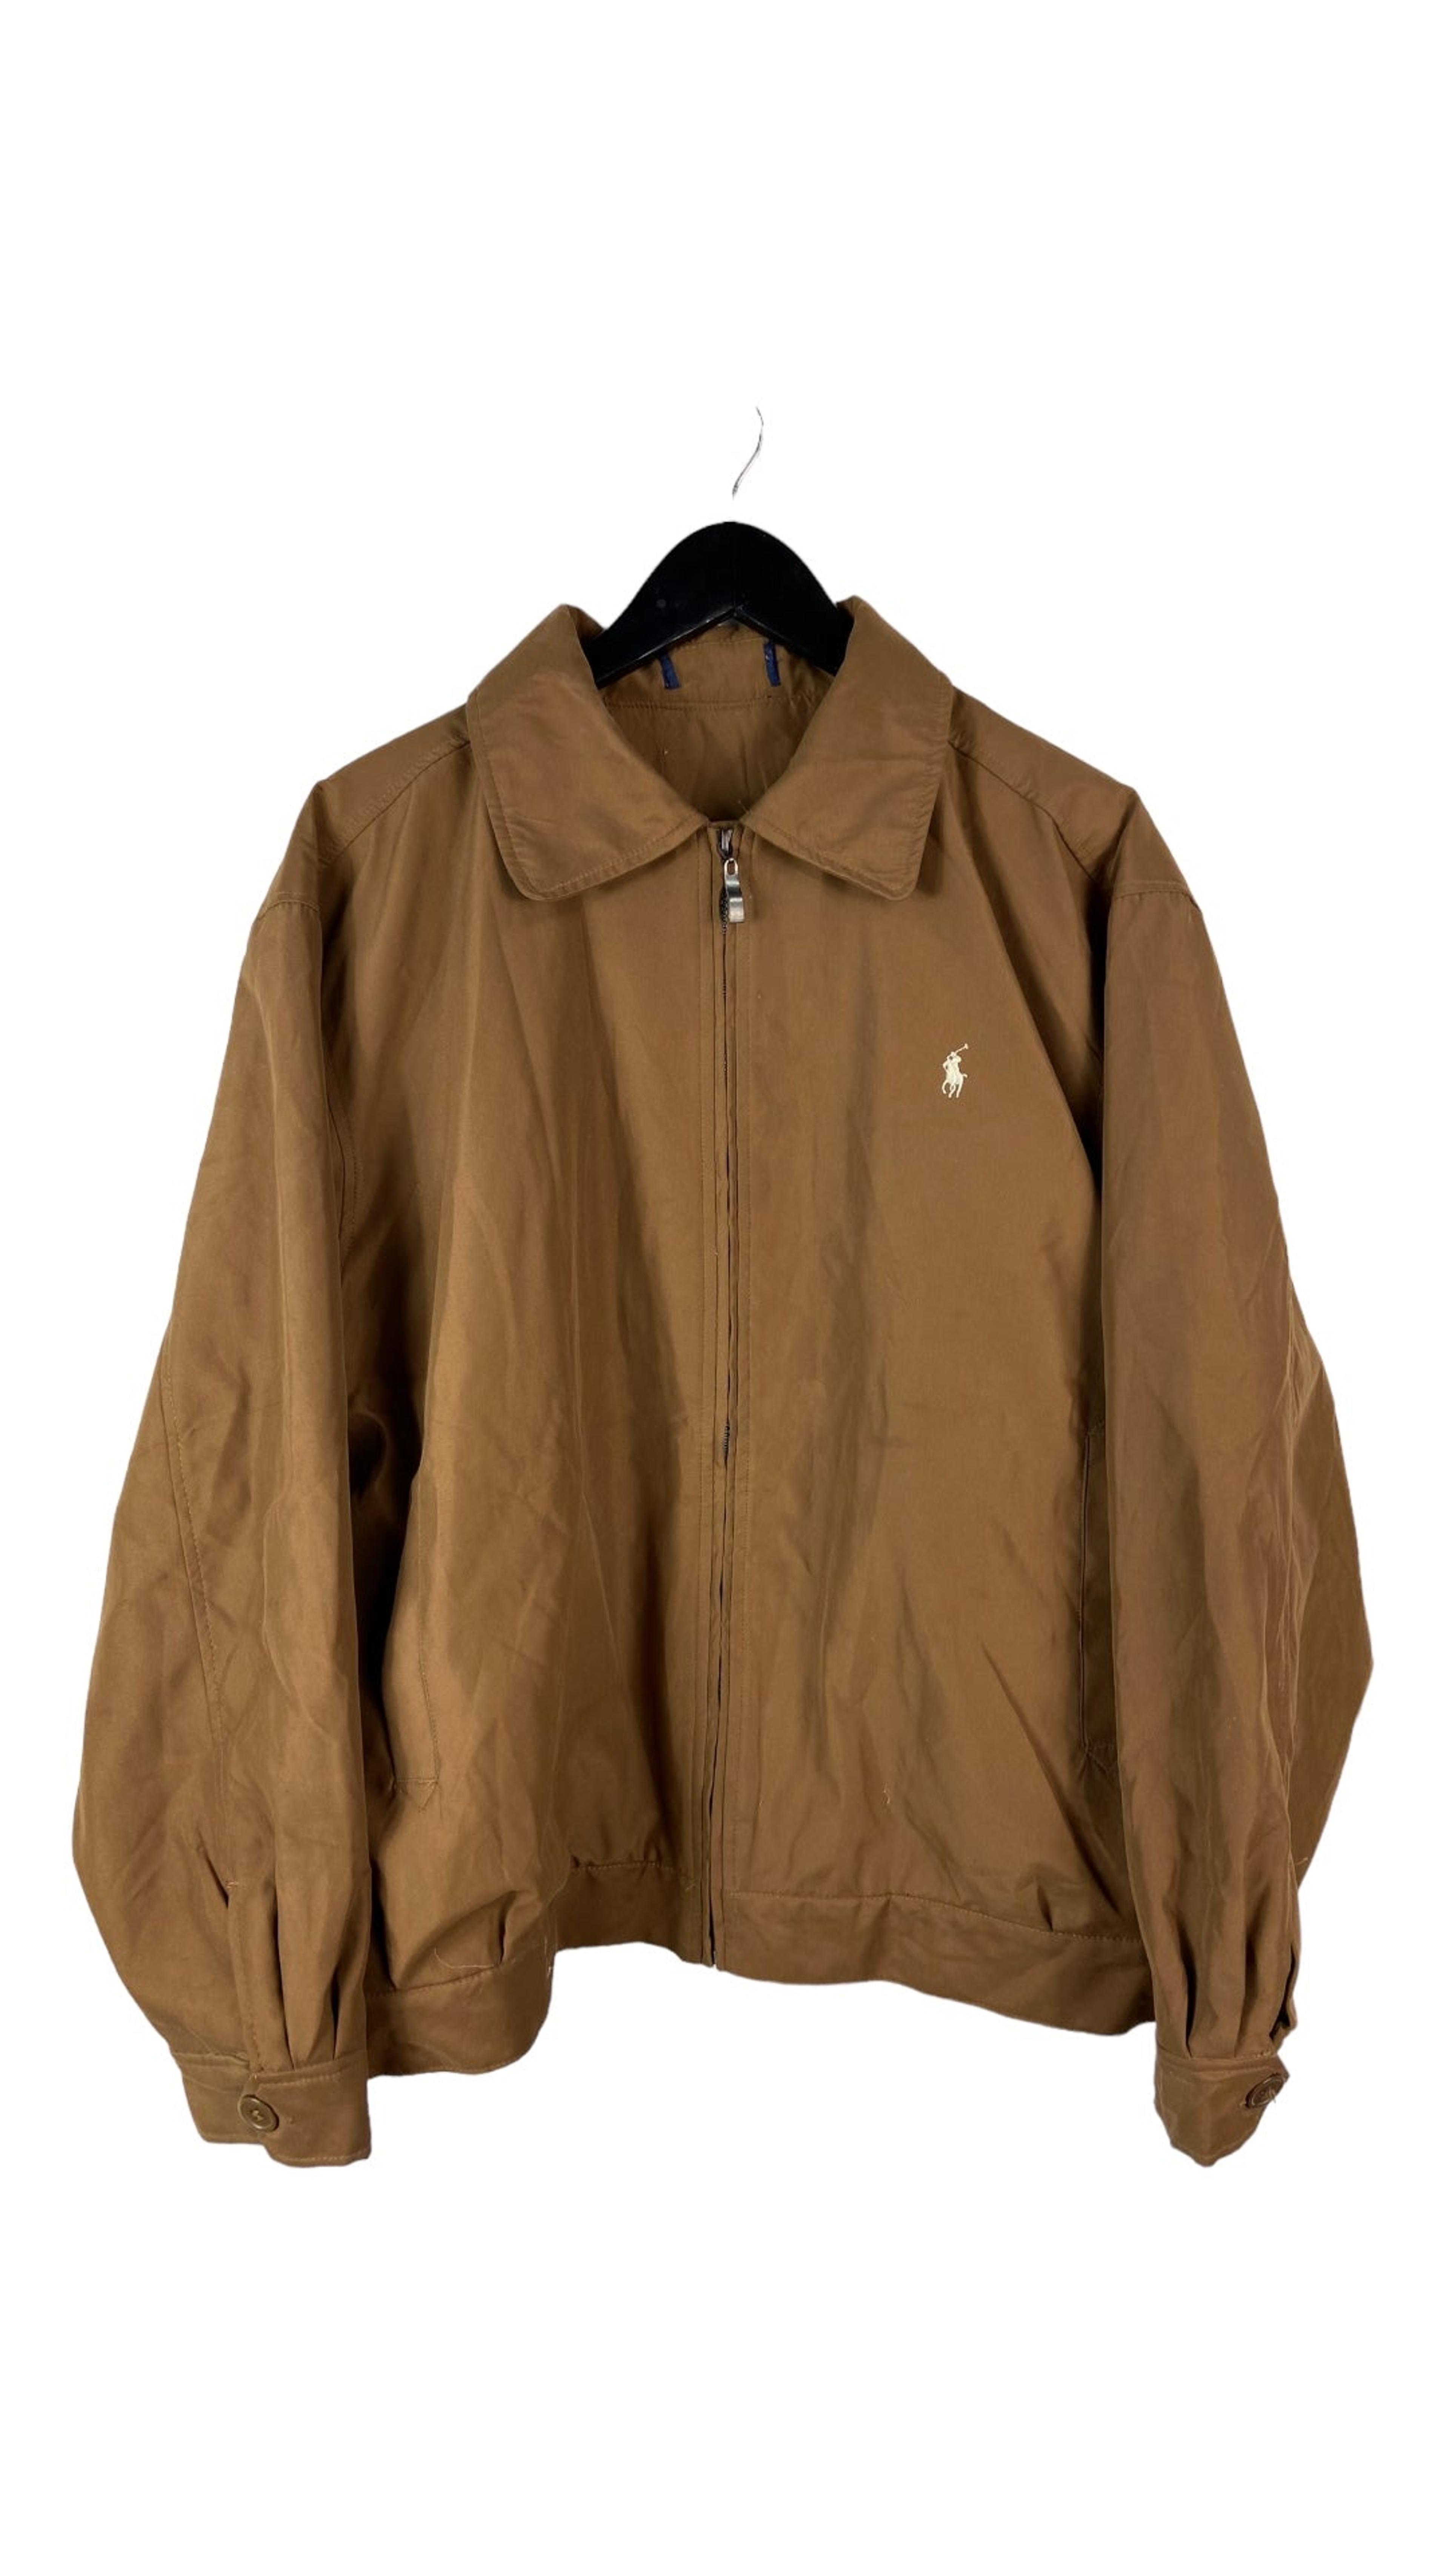 VTG Polo Ralph Lauren Brown Zip Up Jacket Sz XL